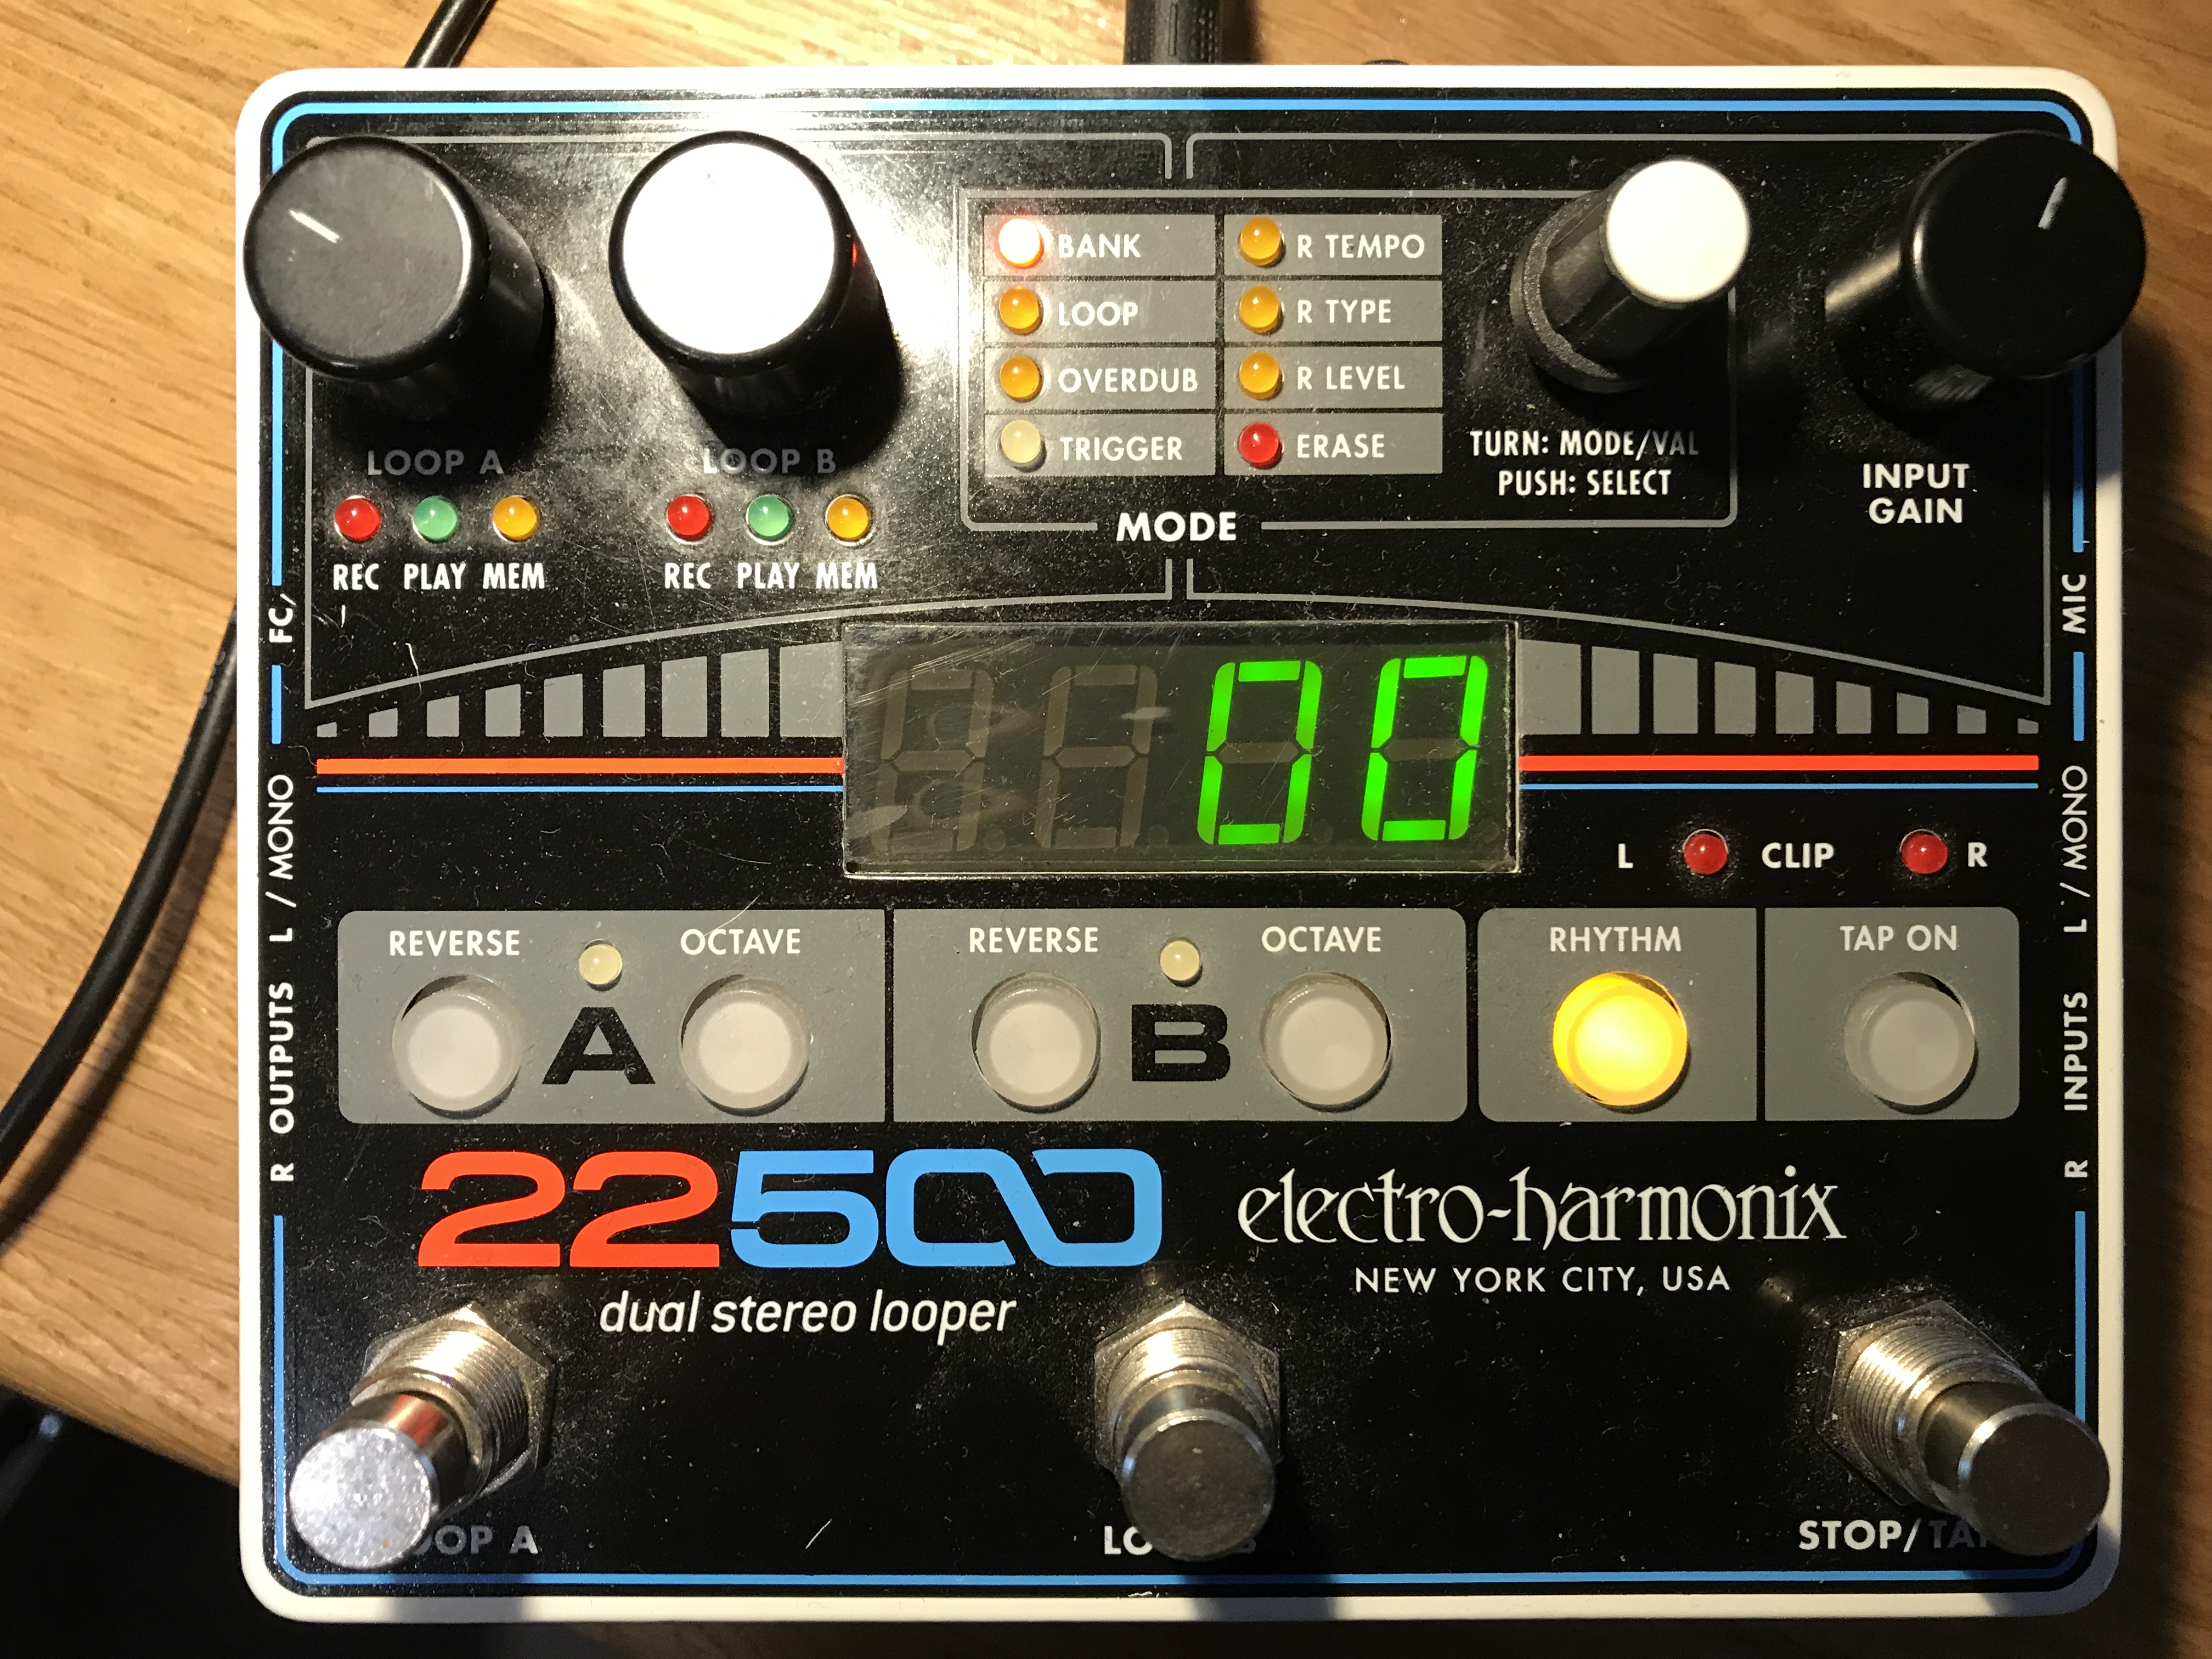 Electro Harmonix 665229 Effet de Guitare /électrique avec Synth/étiseur filtre 22500 Dual Ster Looper